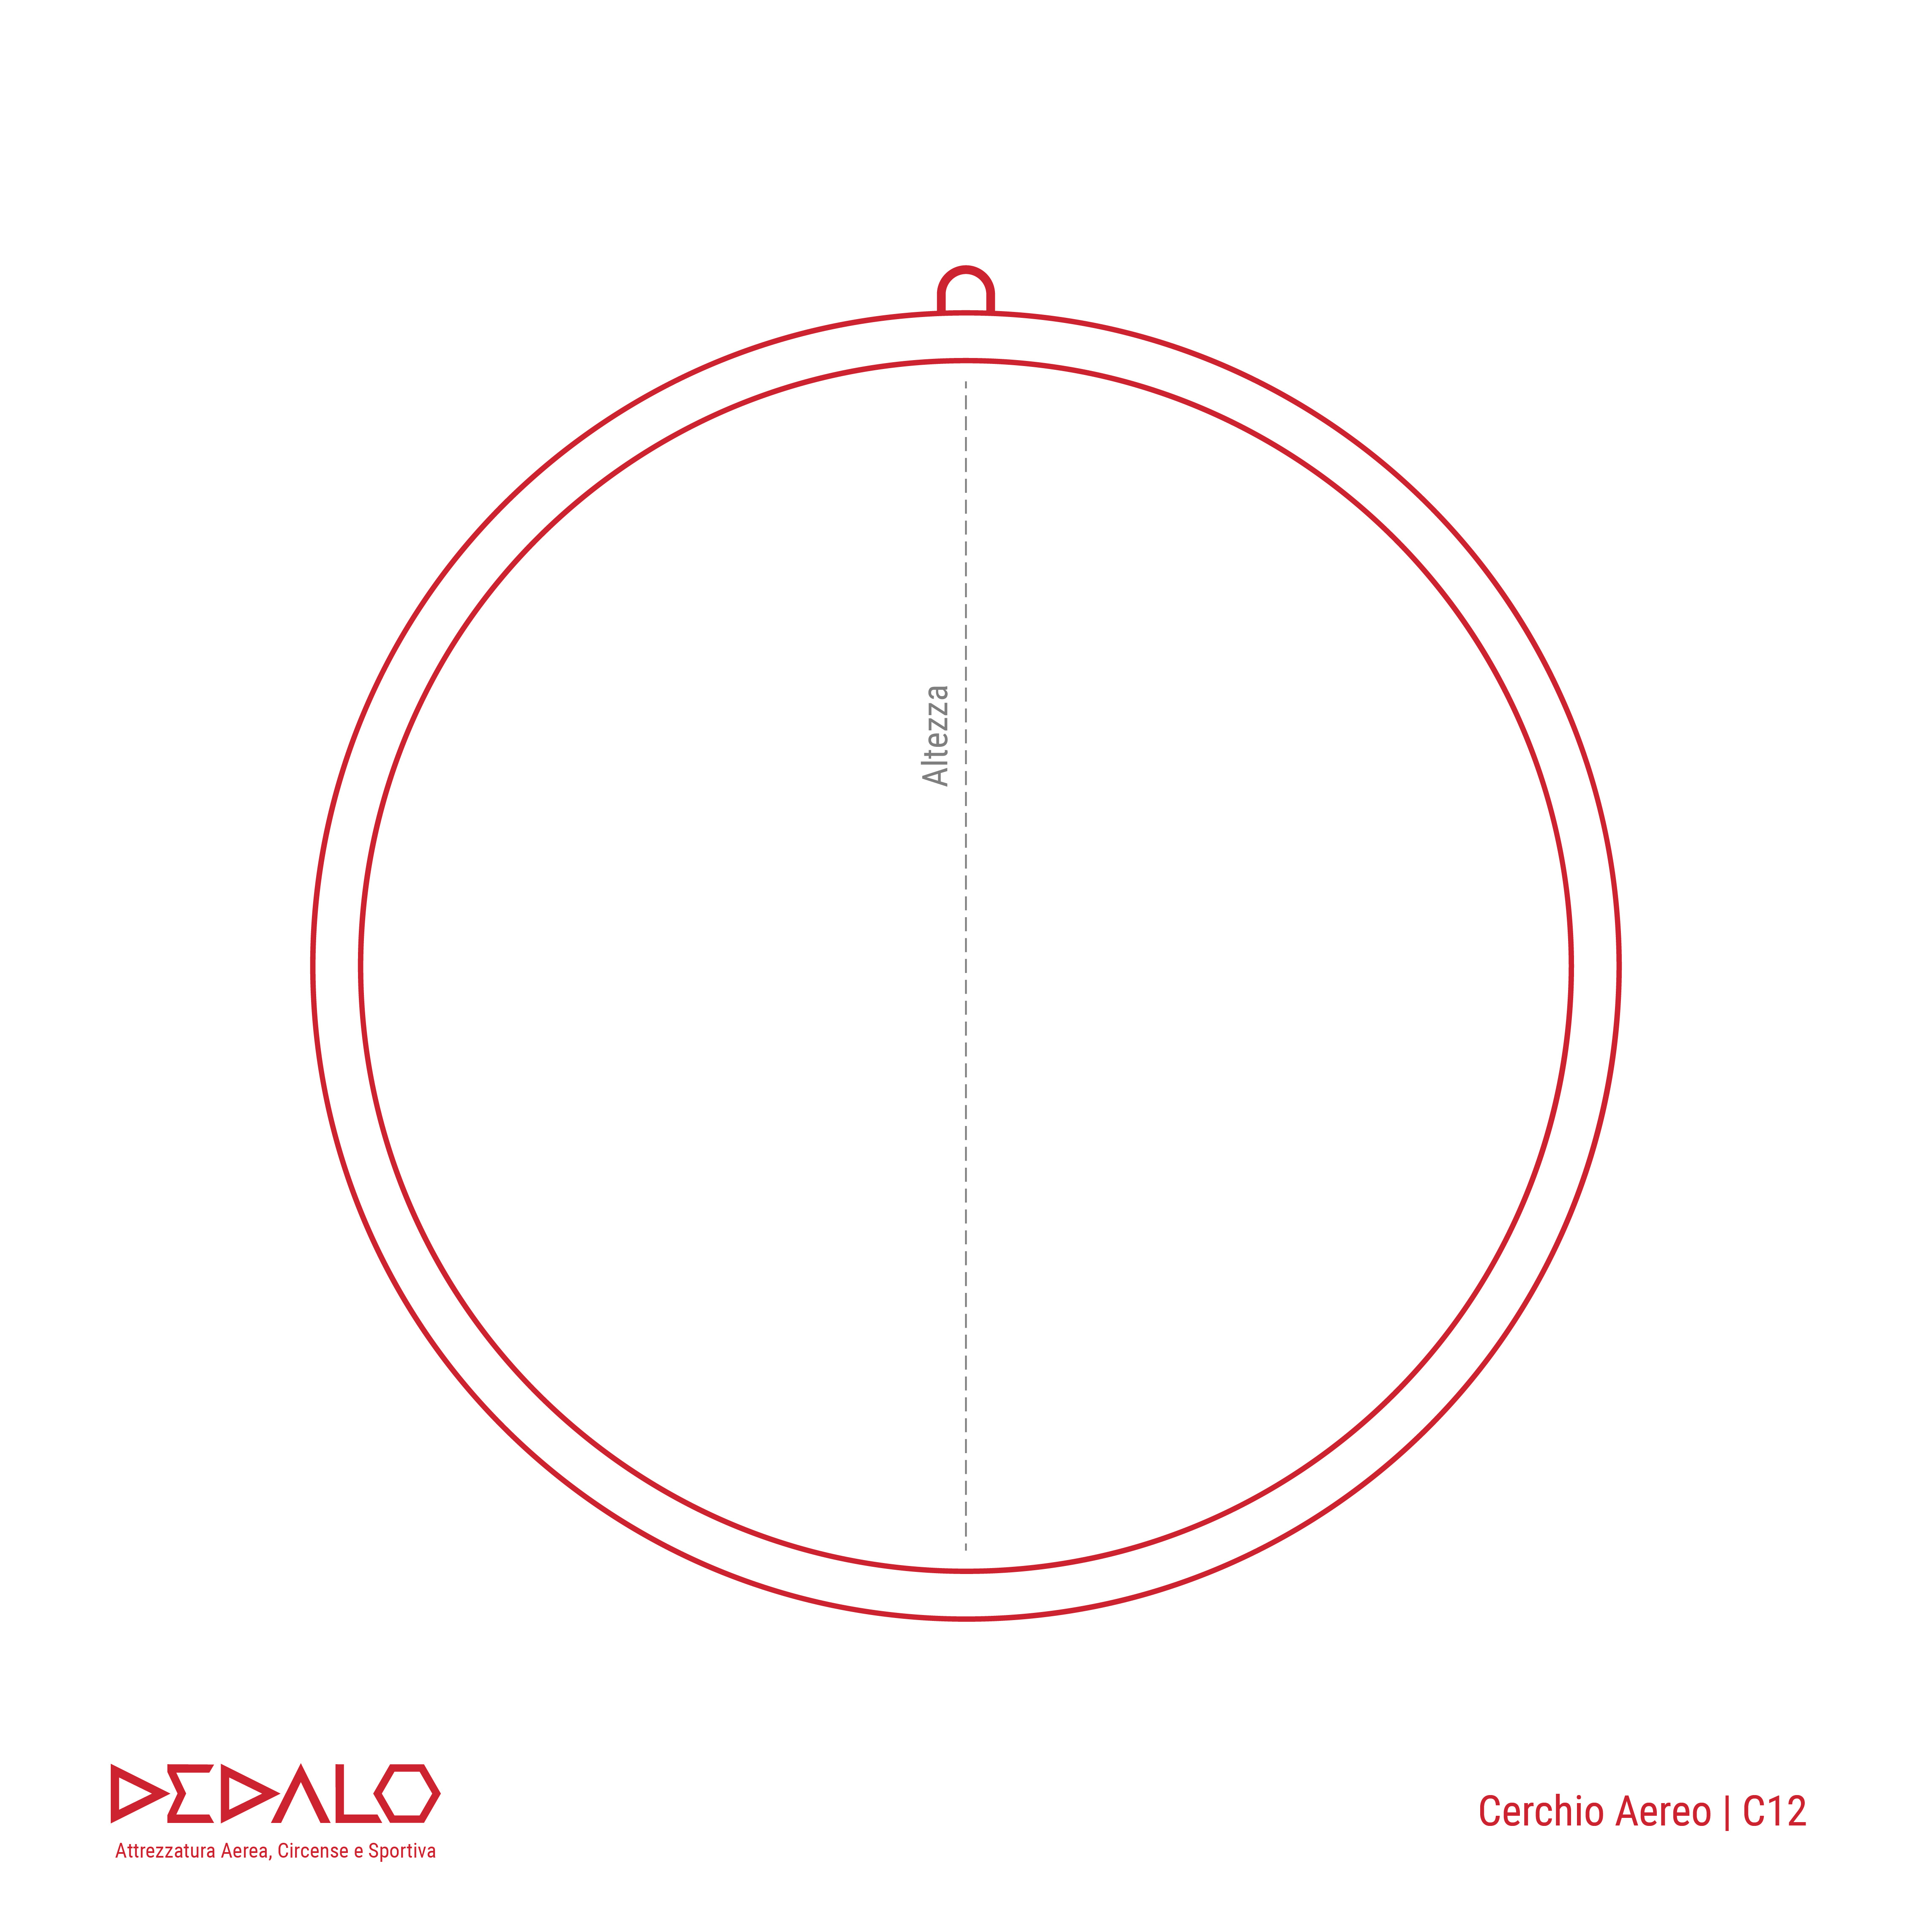 Cerchio Aereo // Aerial Hoop – dedalo, prodotti per l'aerea